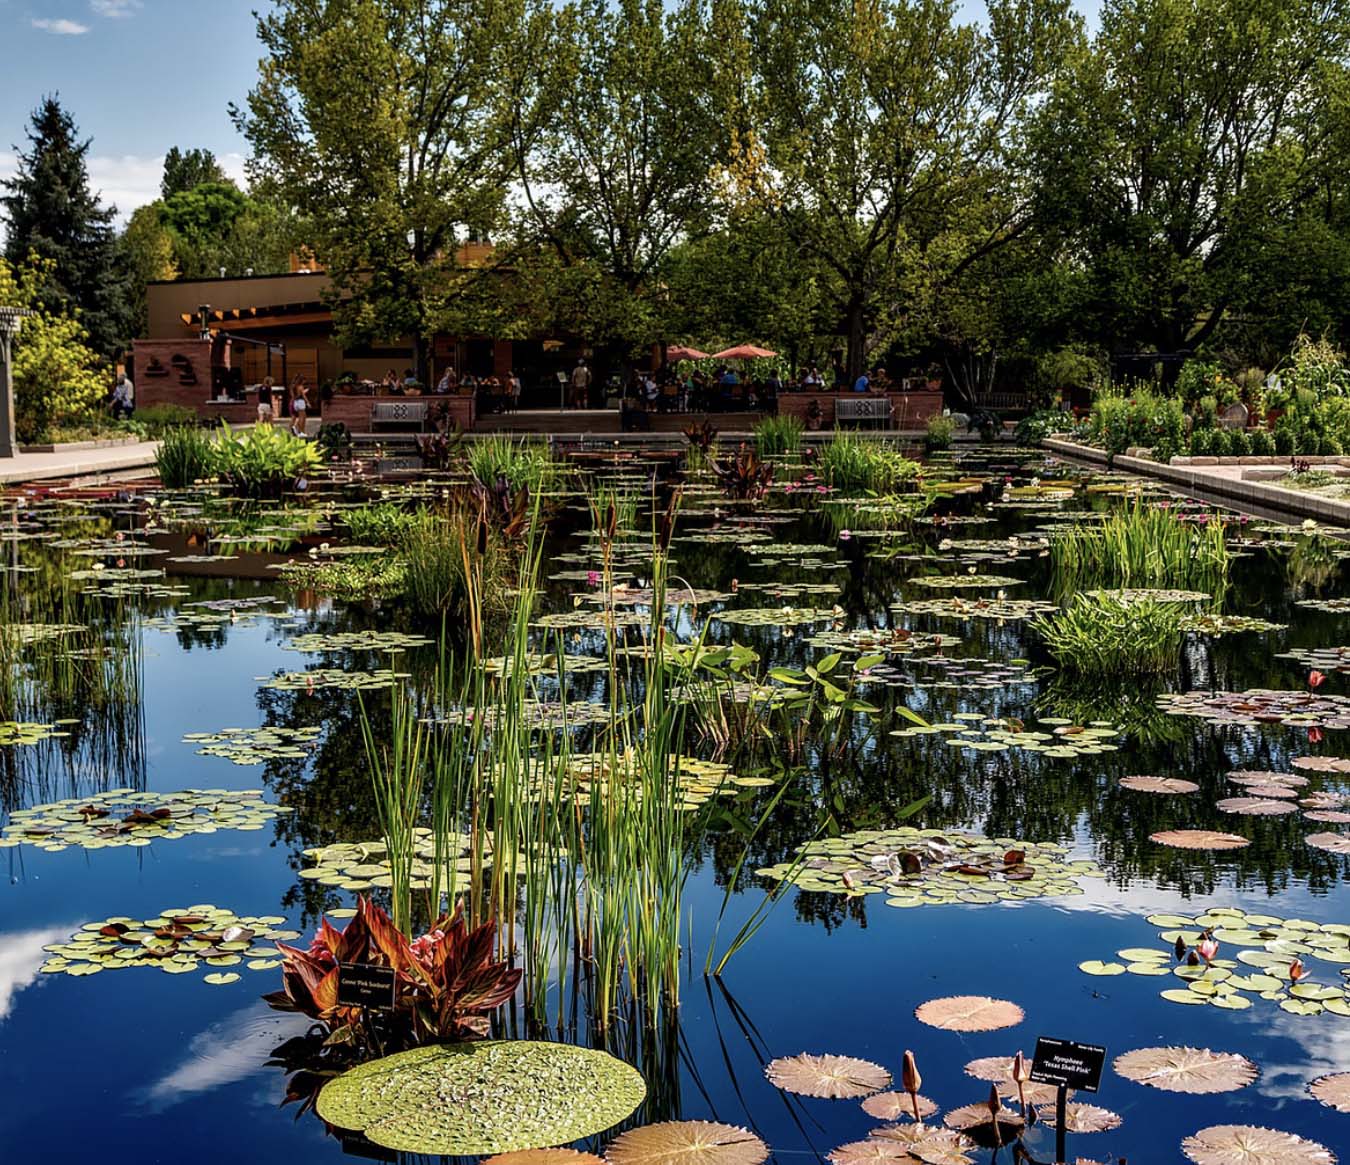 Things to Do in Denver - The Denver Botanic Gardens